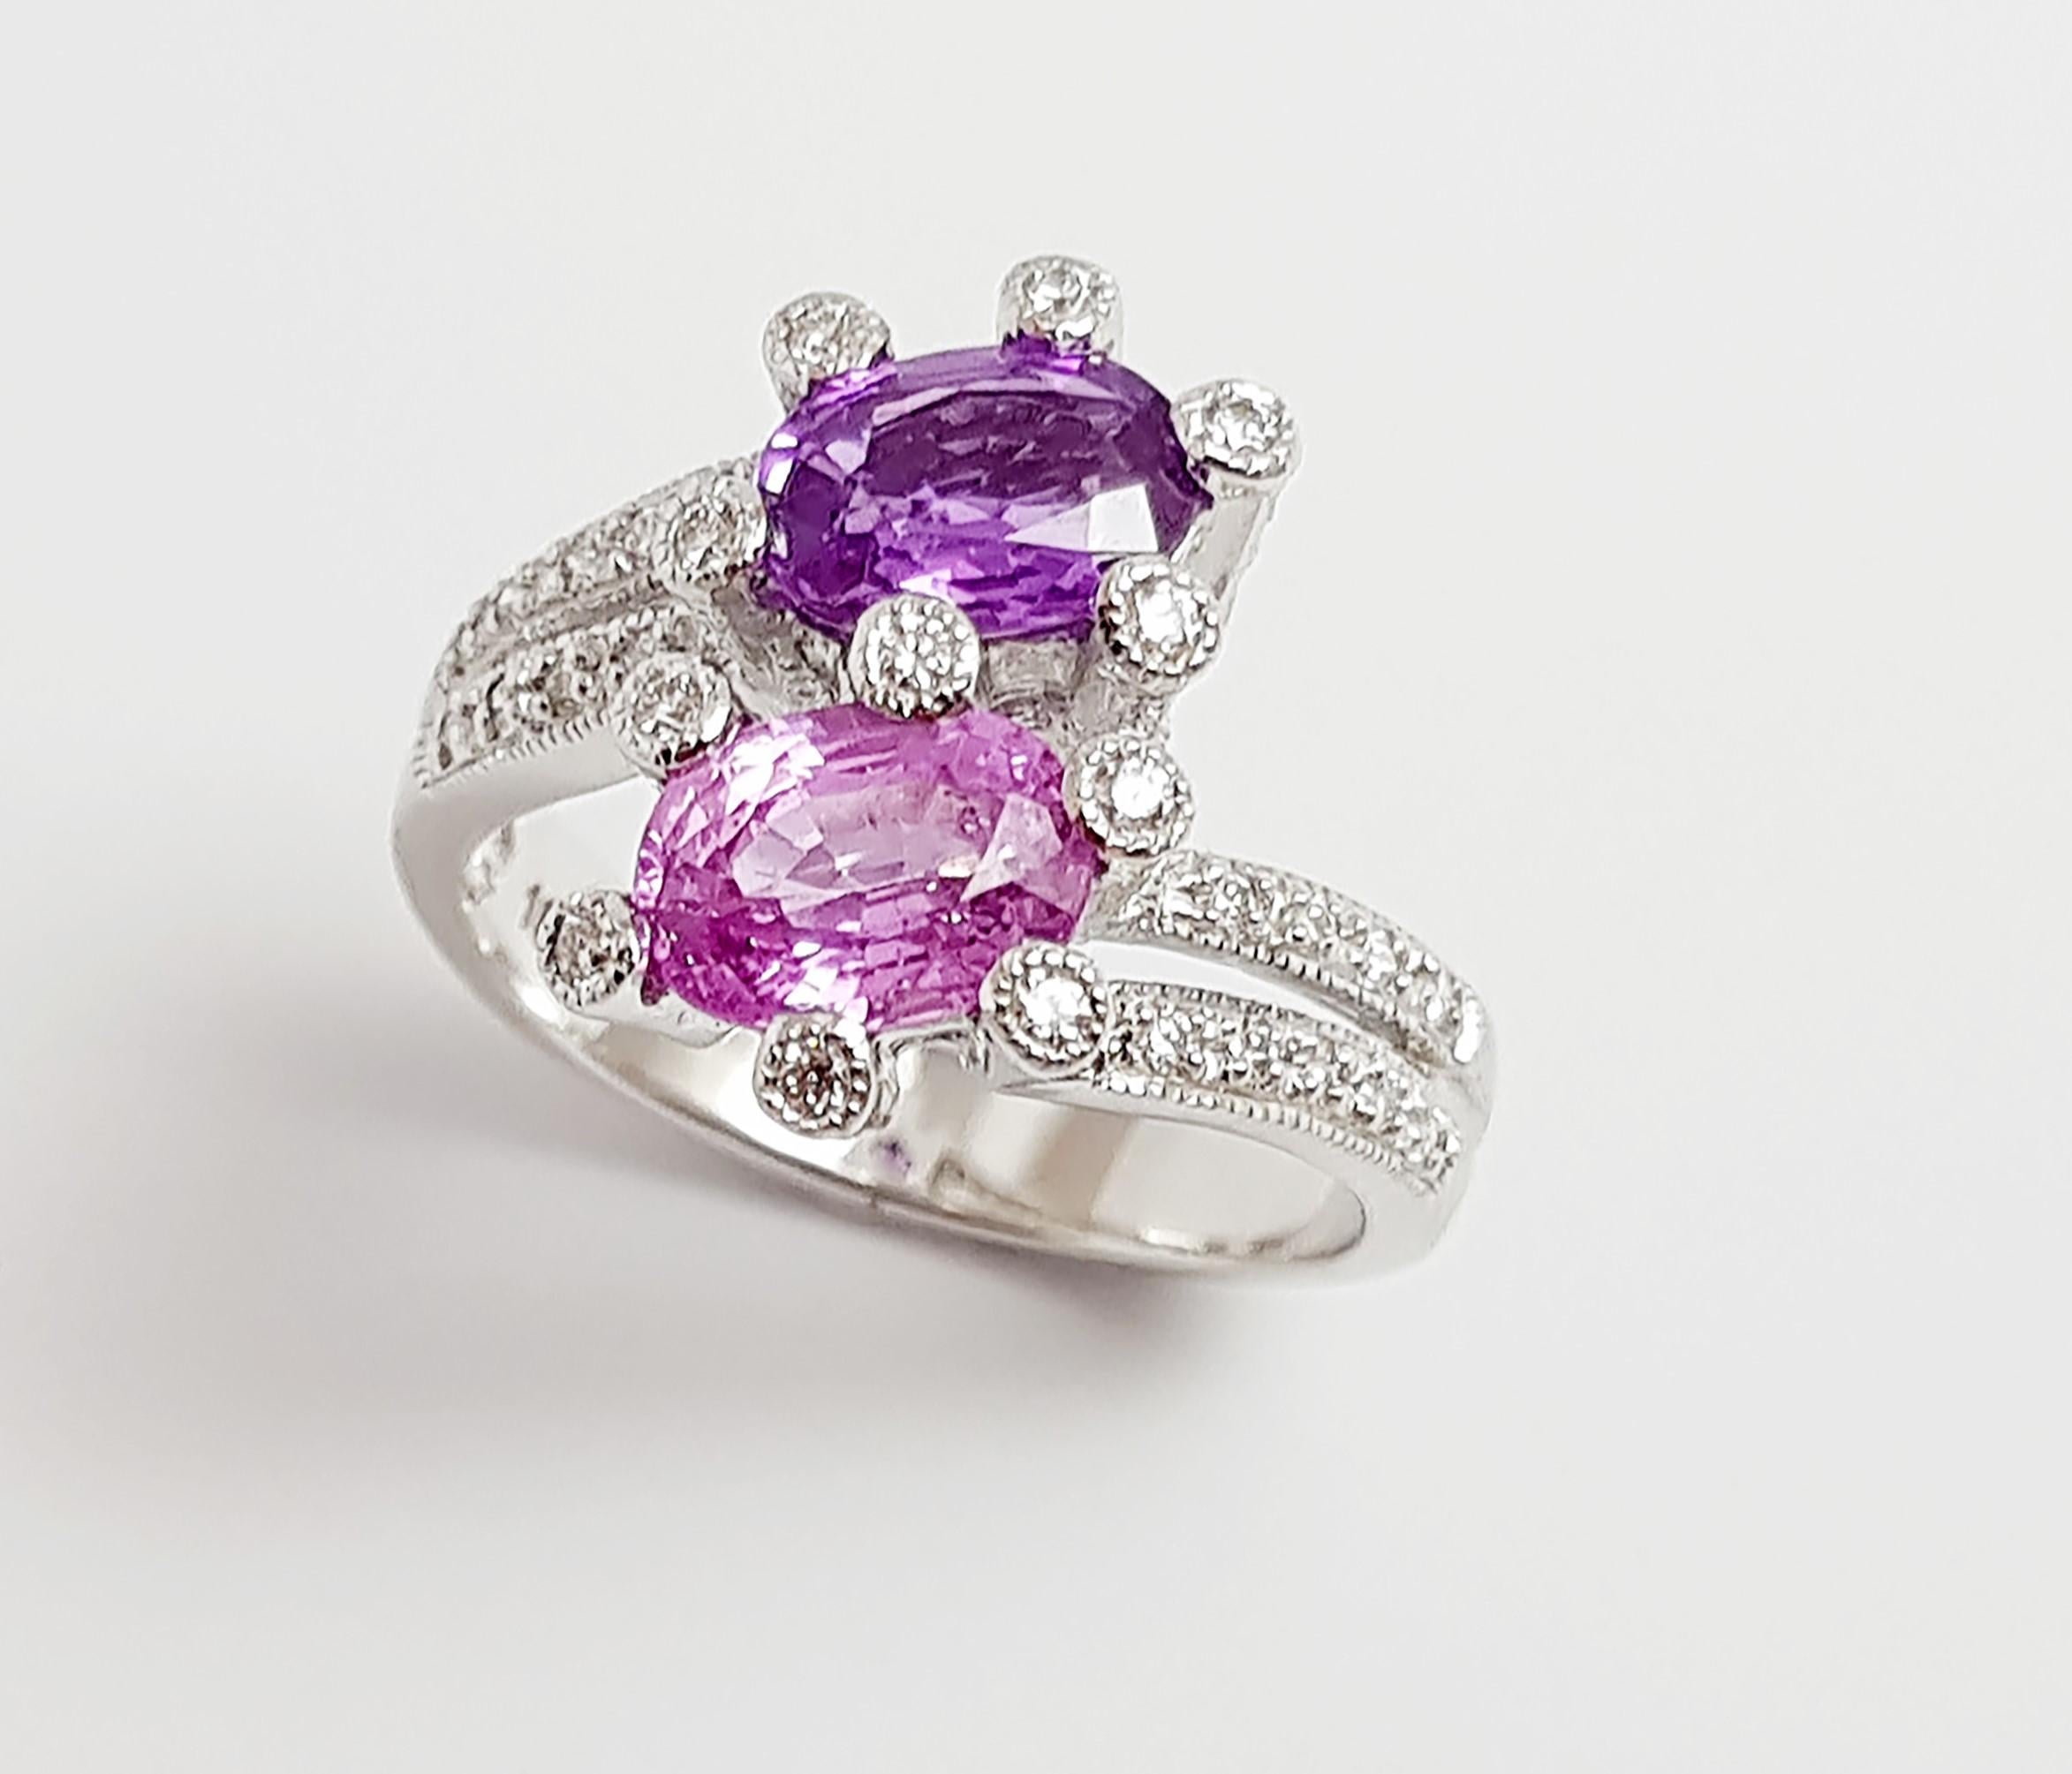 Saphir rose 1,24 carats et saphir violet 0,88 carat avec diamant 0,33 carat Bague en or blanc 18 carats

Largeur :  0,9 cm 
Longueur : 1,3 cm
Taille de l'anneau : 52
Poids total : 6,4 grammes

